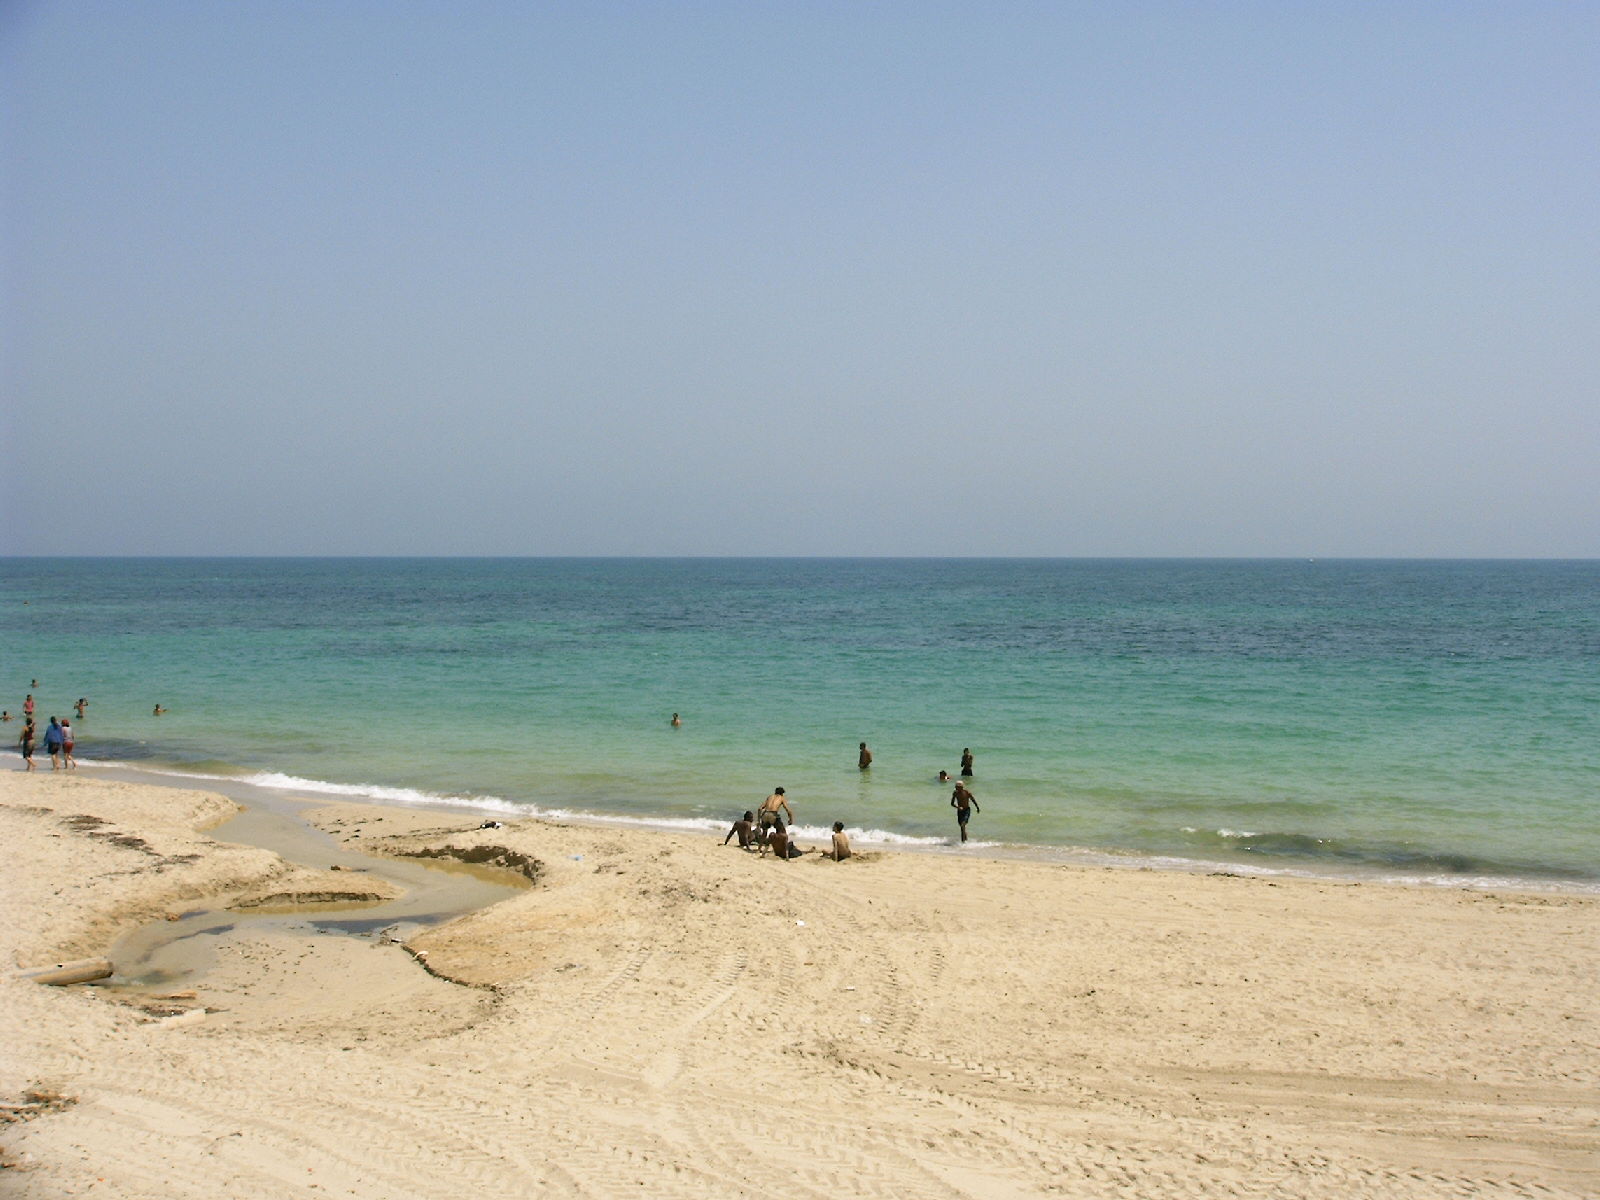 Al-Swehel beach'in fotoğrafı geniş ile birlikte